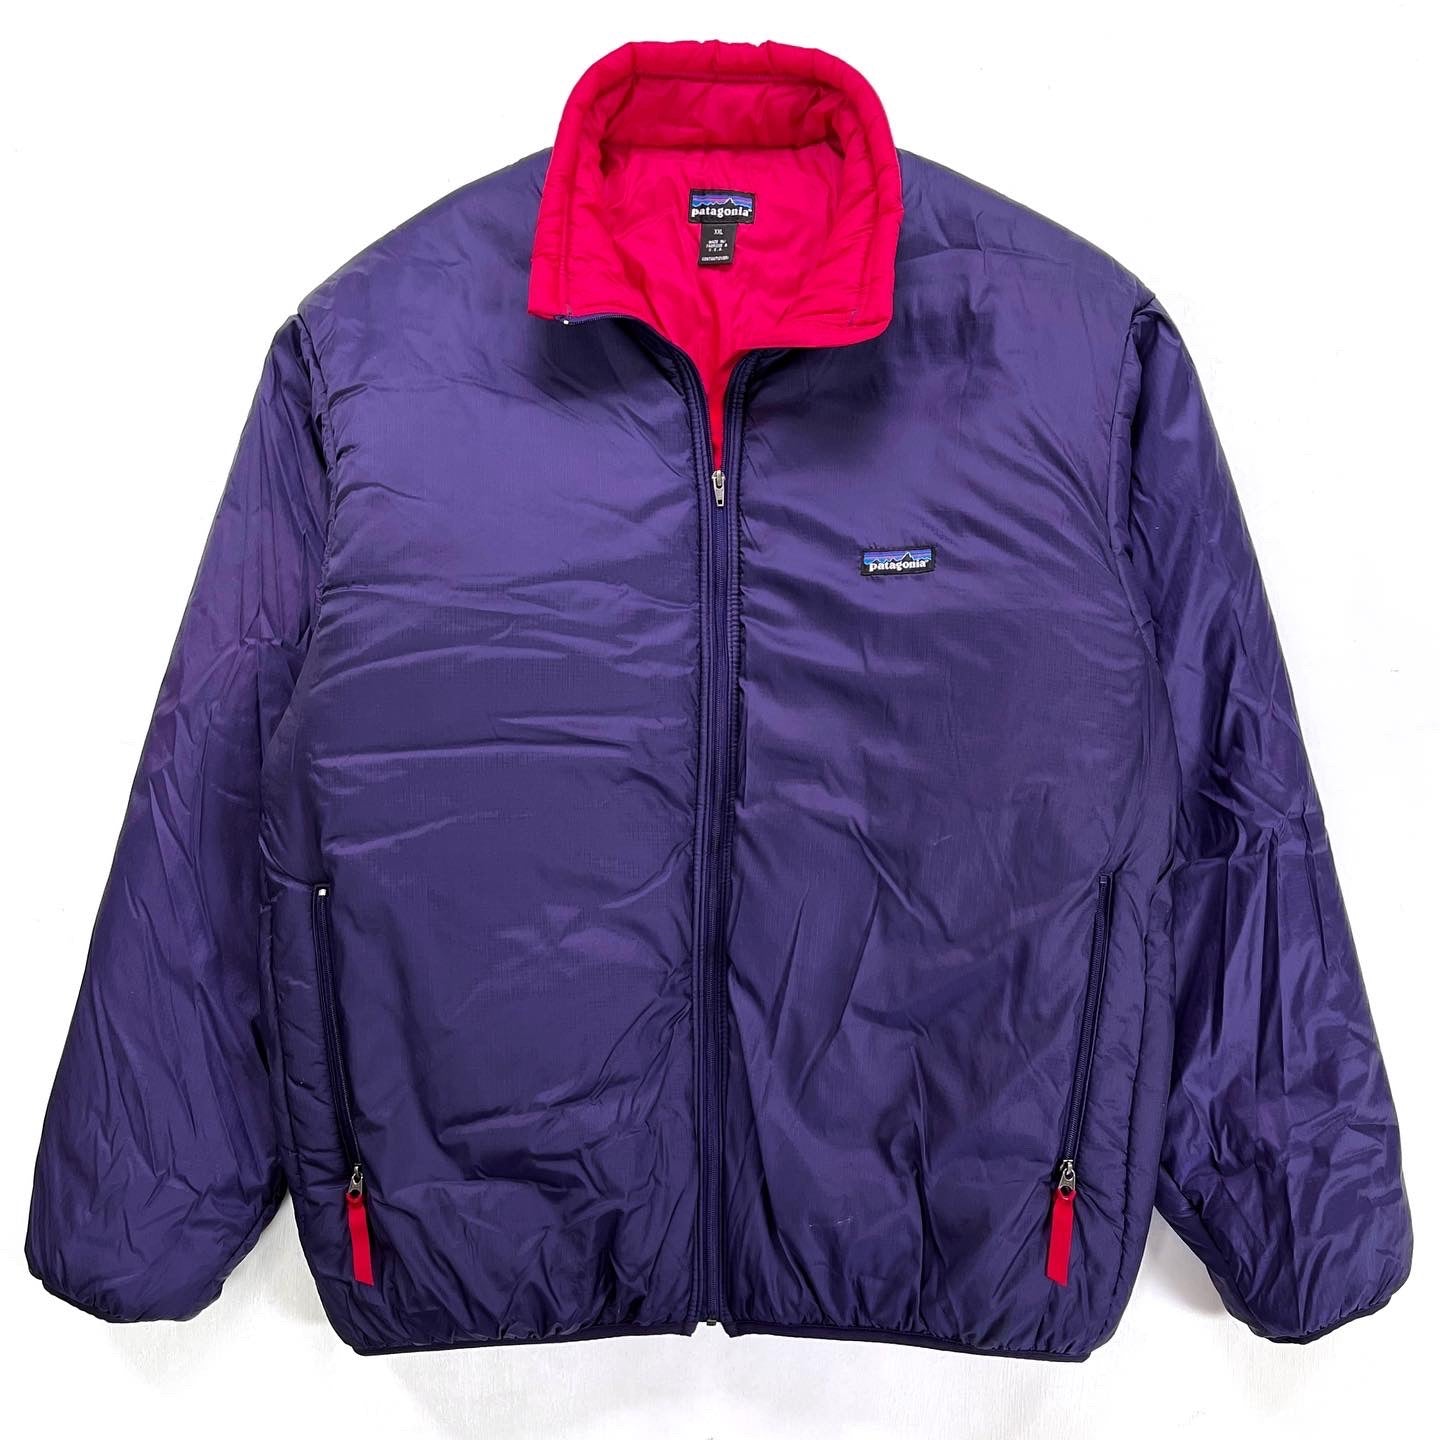 1996 Patagonia Puffball Jacket, Regal Purple & Burnt Chili (XXL)